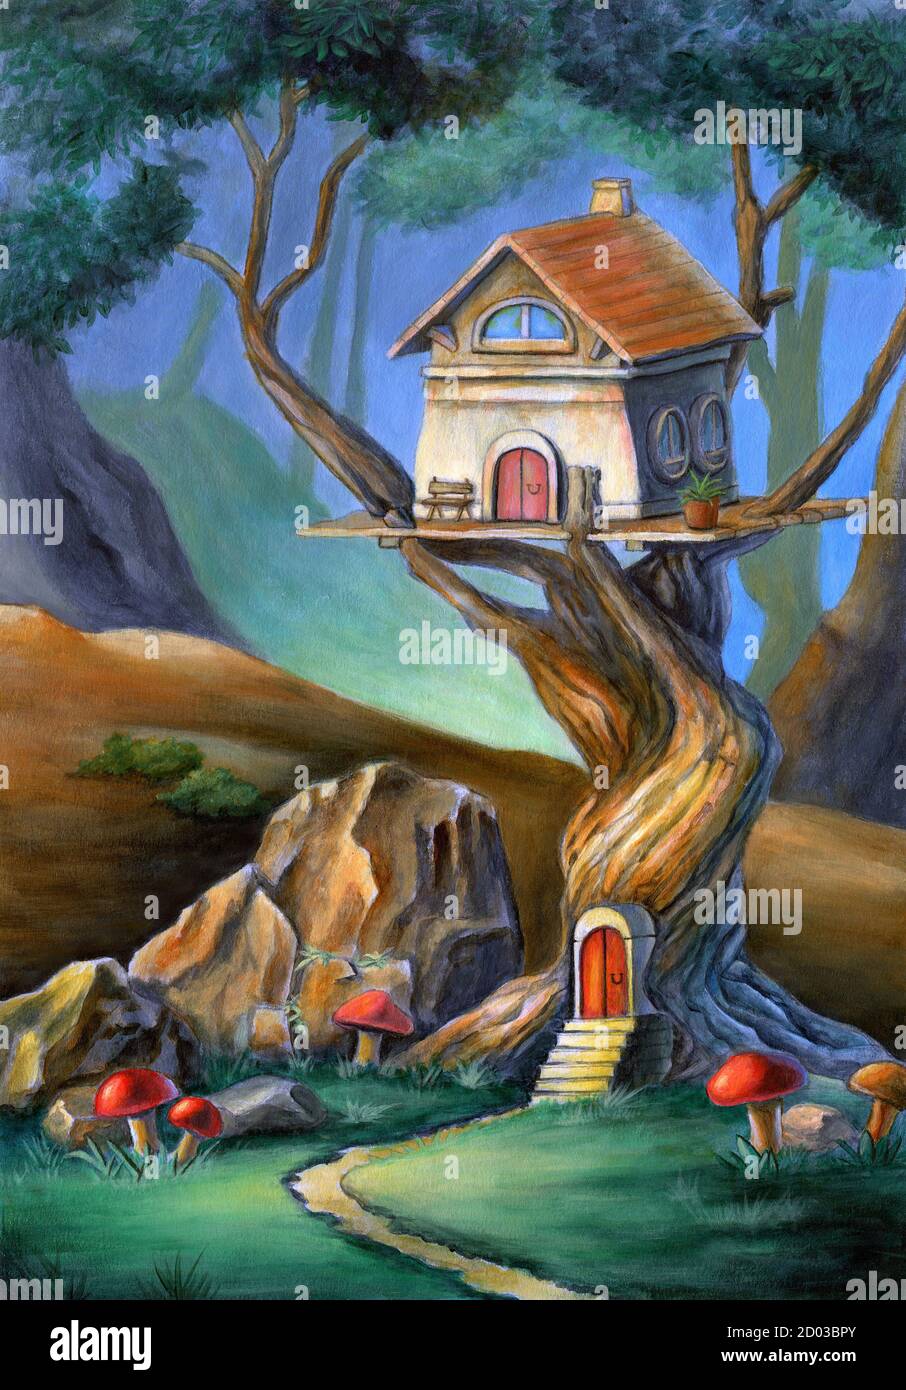 Fantasy scena con una casa carina in cima ad un albero. Illustrazione di supporti misti, acrilico e matita colorata su carta. Foto Stock